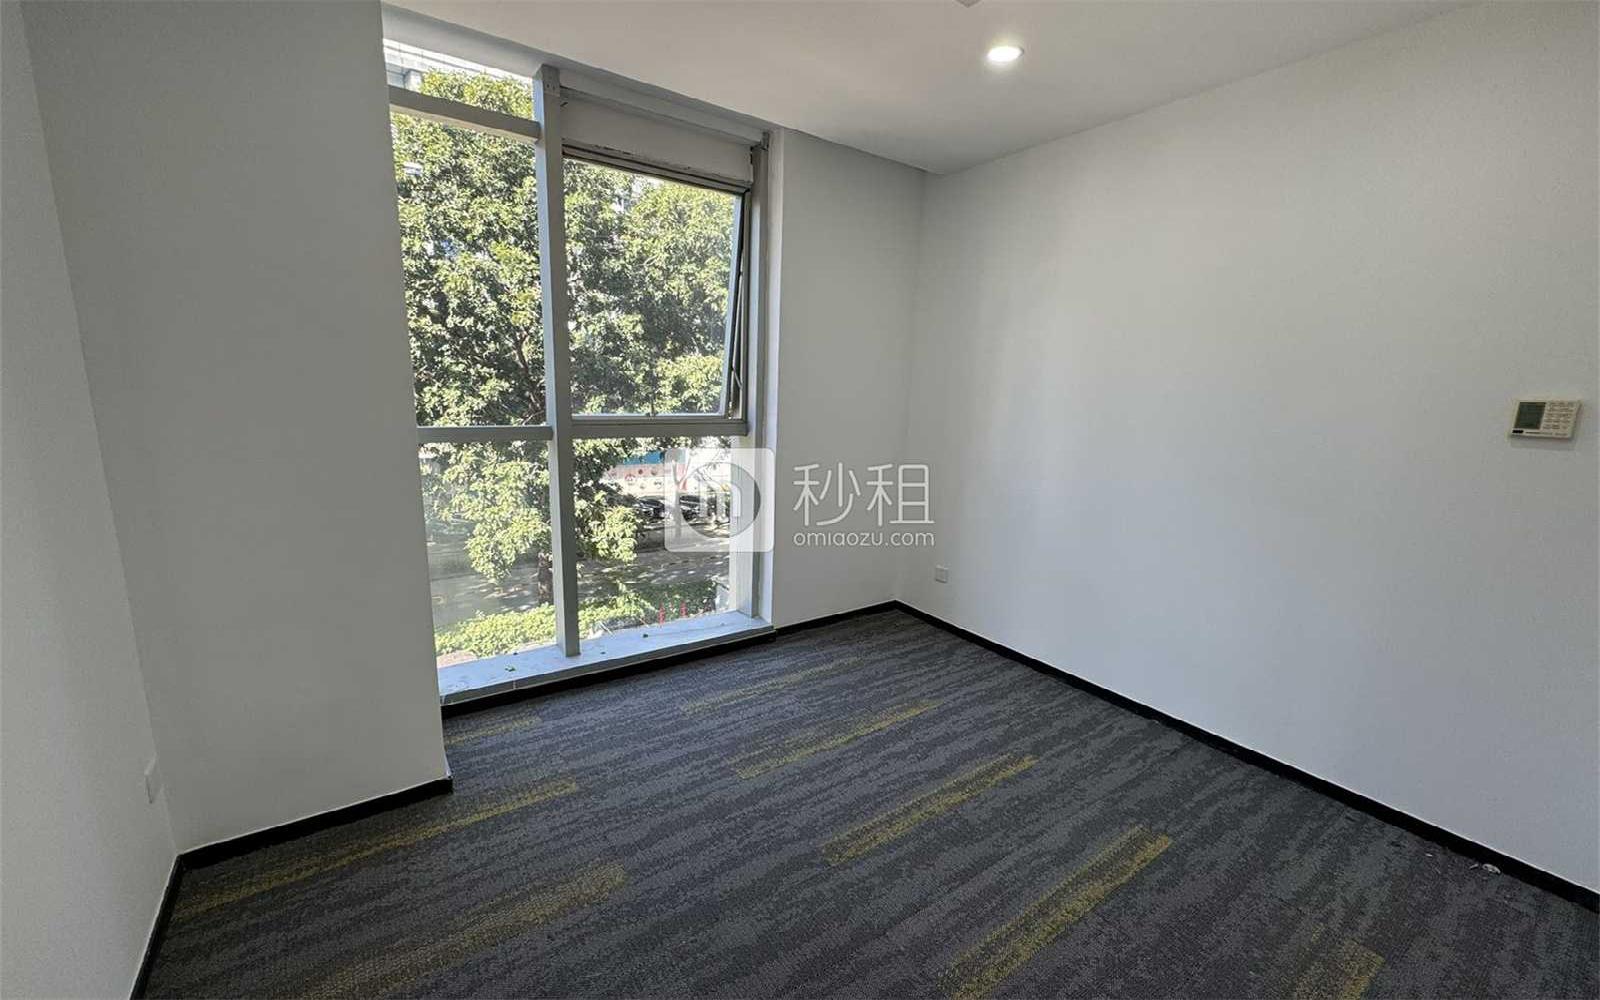 惠恒大厦写字楼出租320平米简装办公室70元/m².月